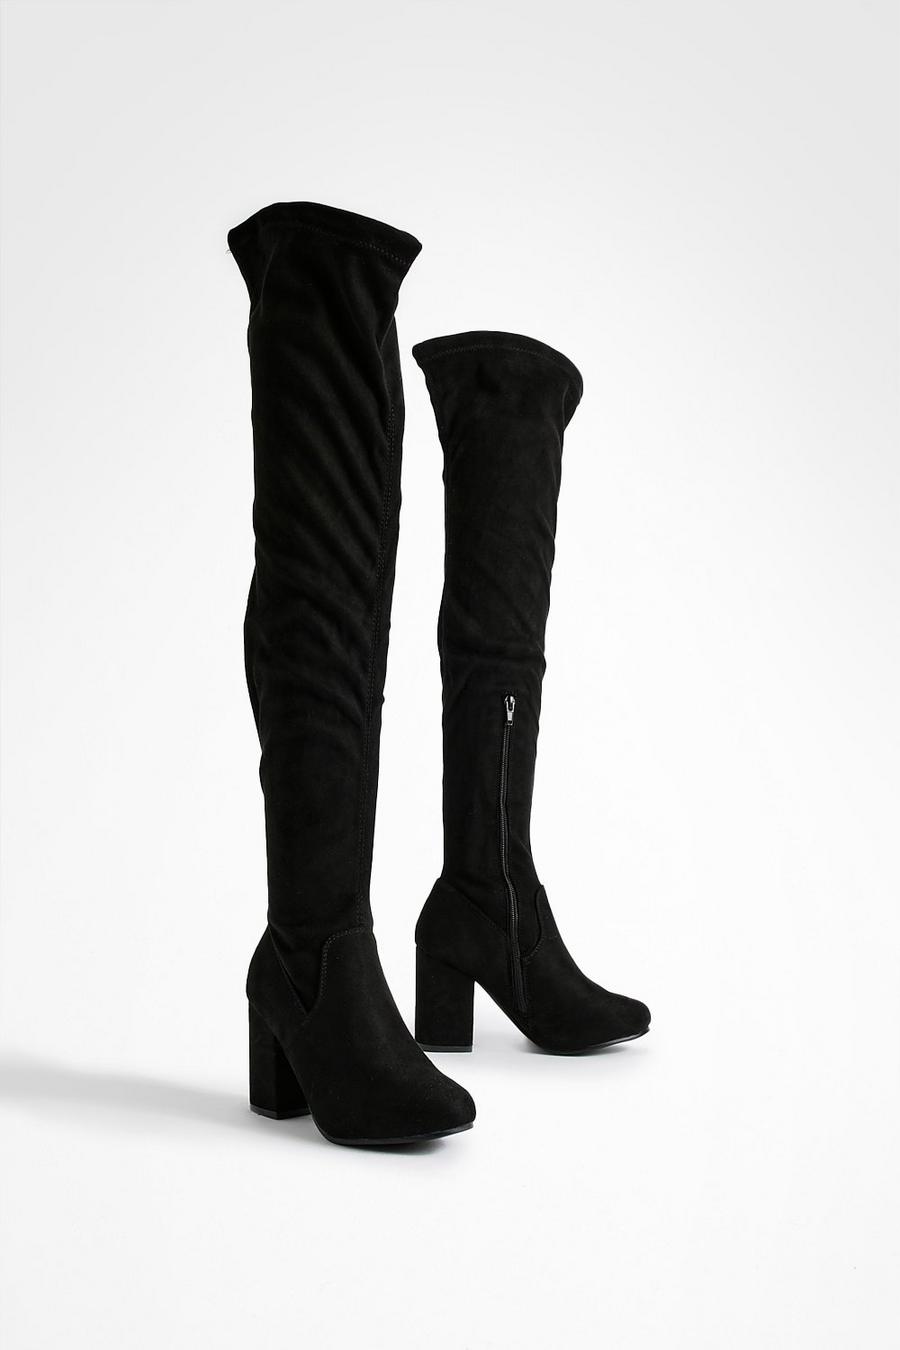 Lizzhen Womens Winter Fashion Stiletto Heels Knee High Riding Boots Zip